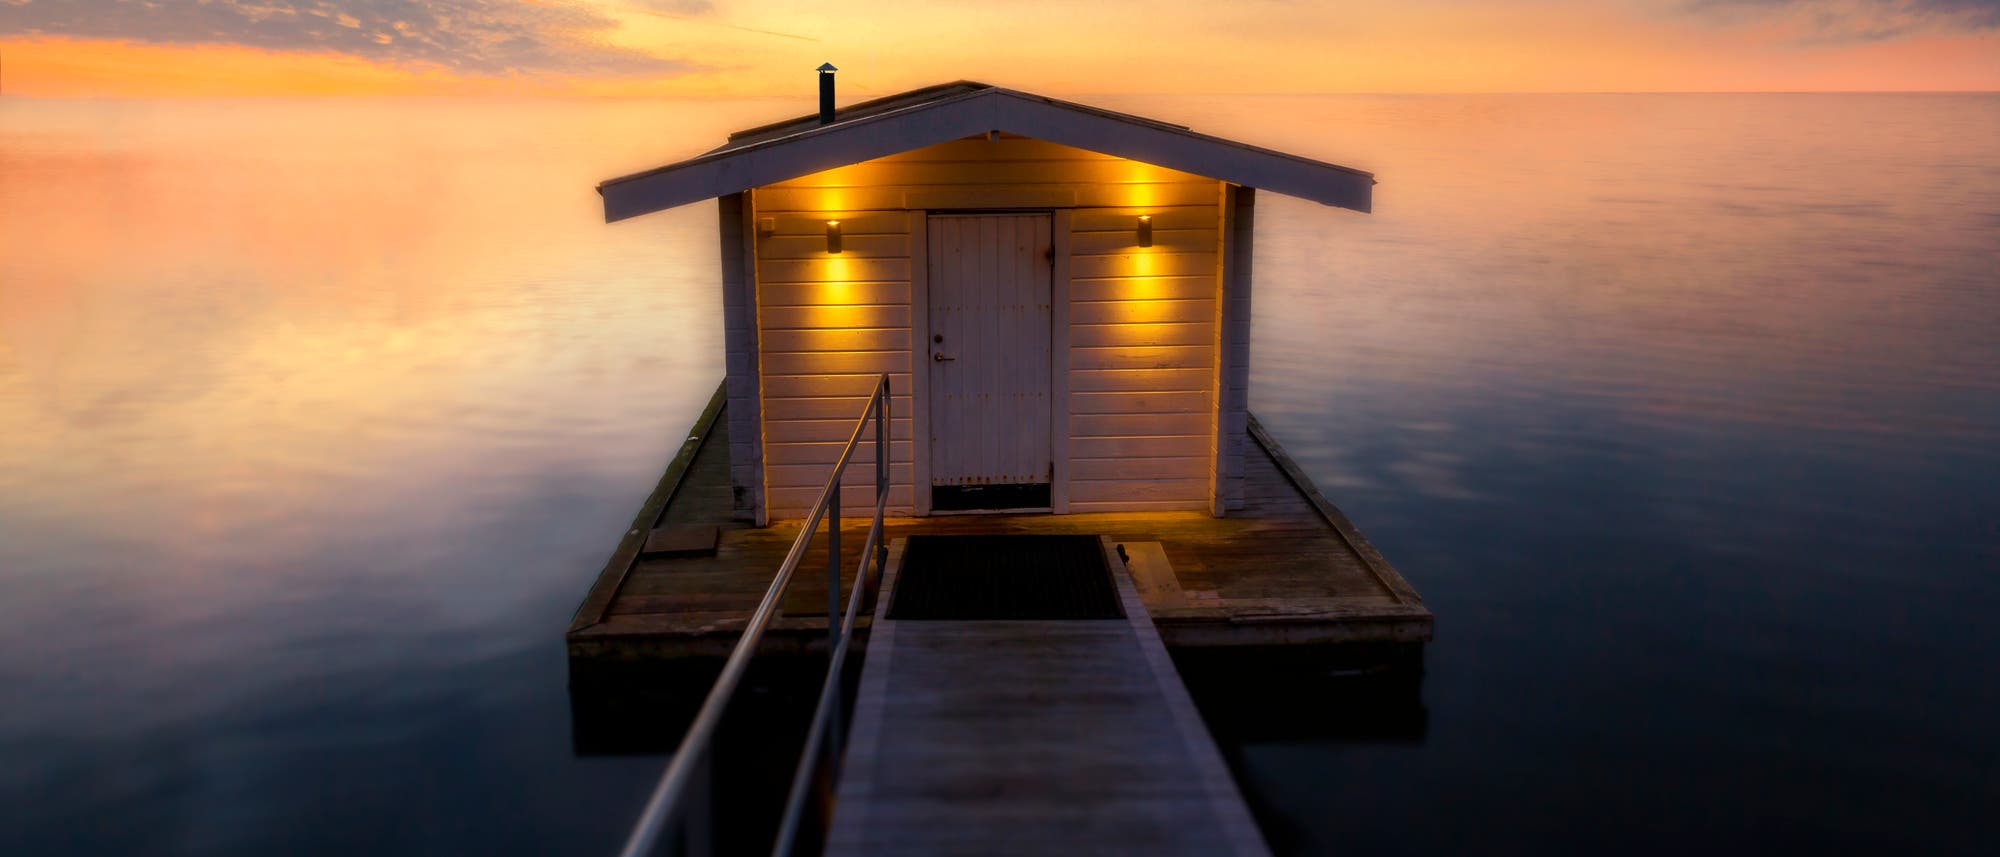 Finnische Sauna am See